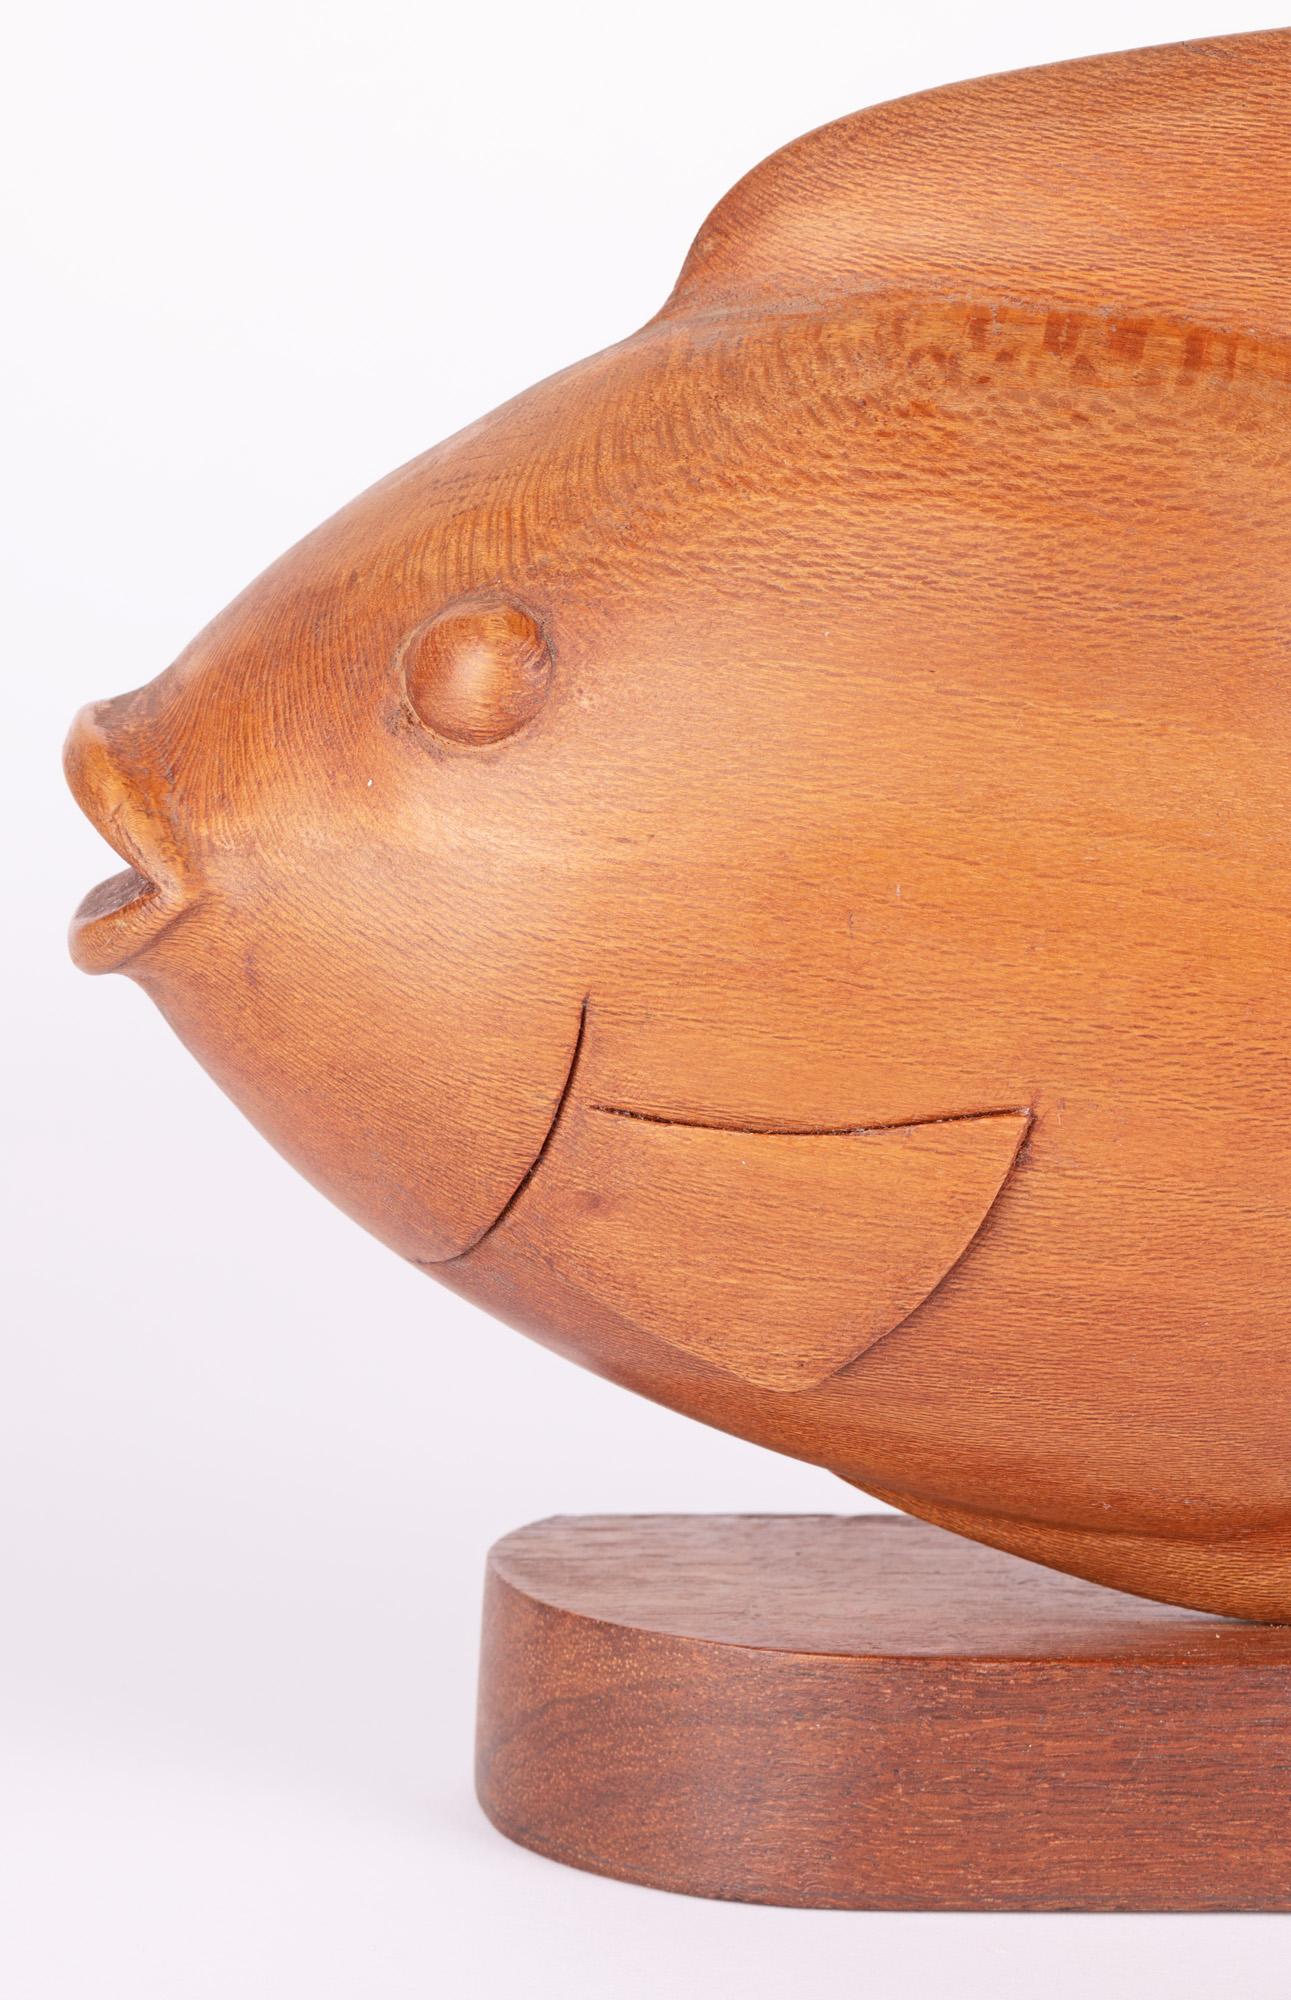 Eine stilvolle dänische zugeschrieben Mitte des Jahrhunderts geschnitzt Teak Modell eines Fisches auf einem Sockel montiert,. Der Fisch wurde aus einem einzigen Stück Holz geschnitzt und ist insofern ungewöhnlich, als er gedreht und von zwei Seiten